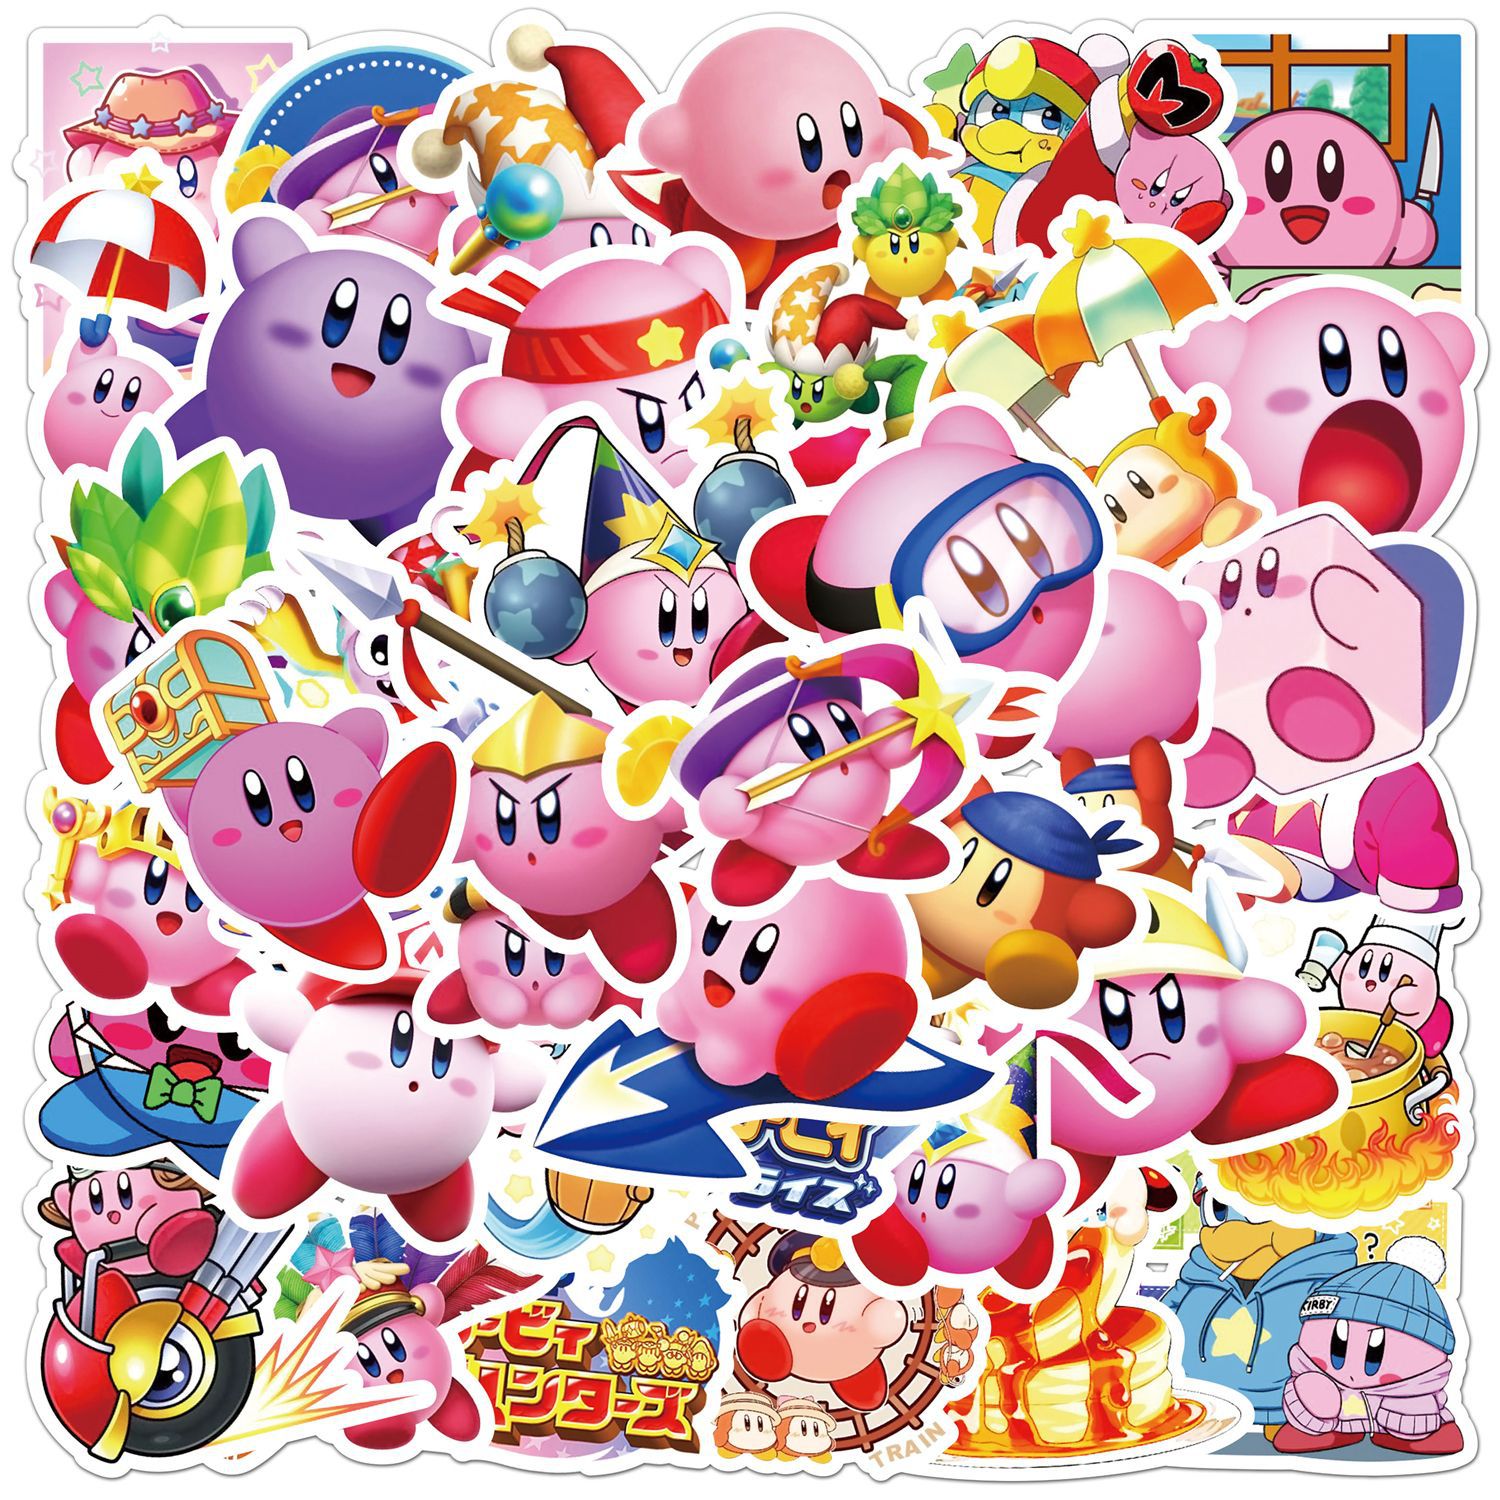 Kirby anime waterproof stickers (50pcs a set)